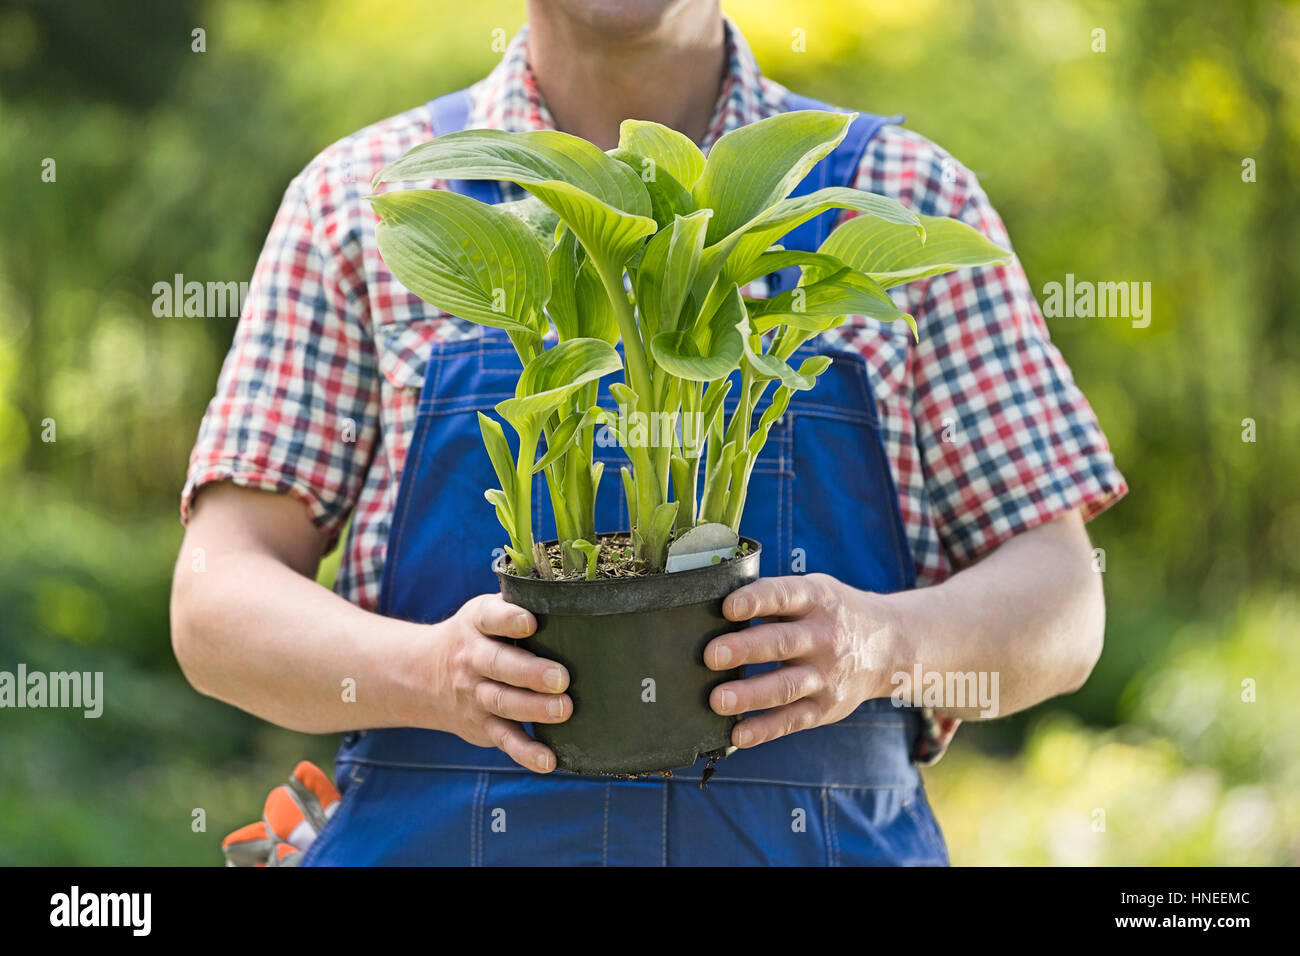 Au milieu du jardinier holding potted plant at nursery Banque D'Images